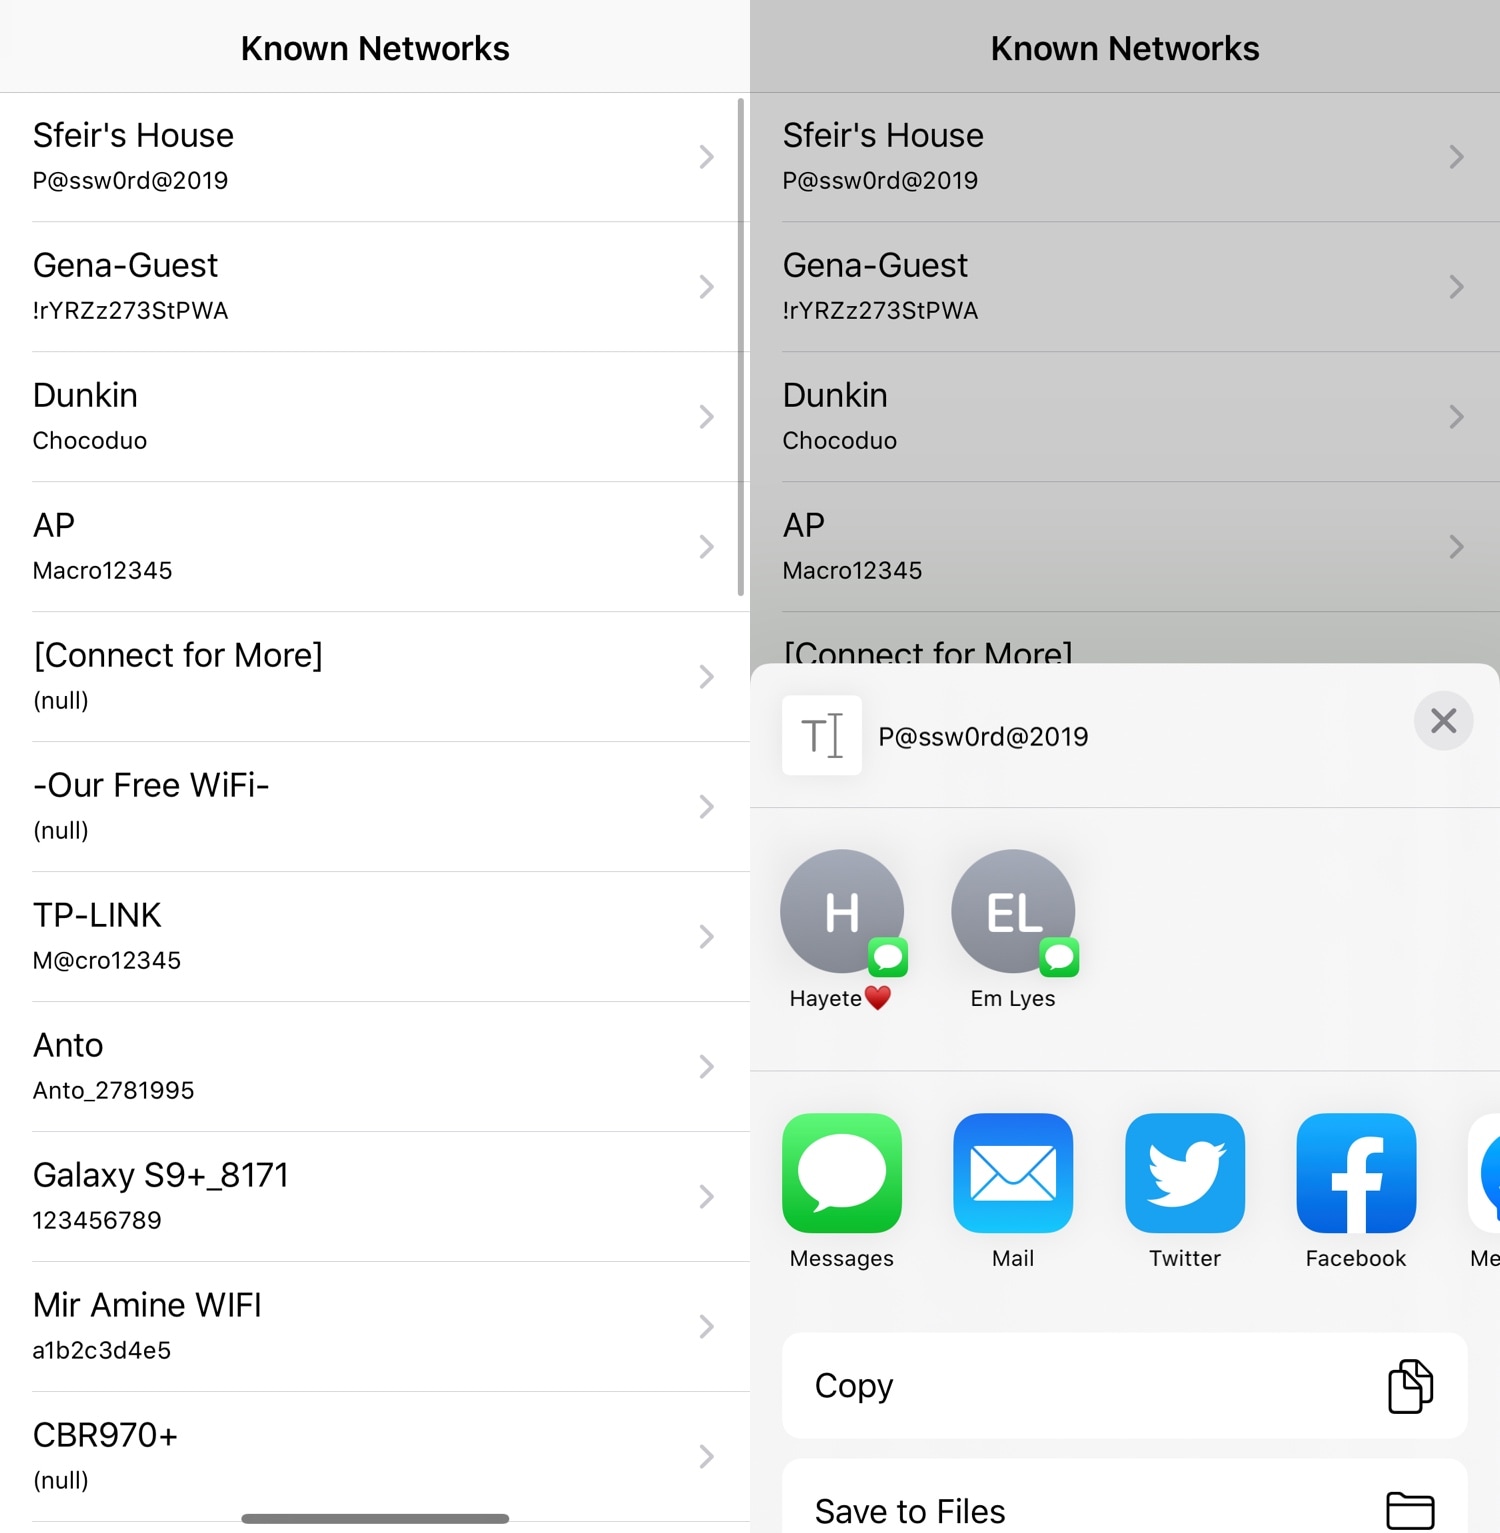 SmartNetwork membantu Anda mengelola koneksi jaringan perangkat iOS 4 Anda